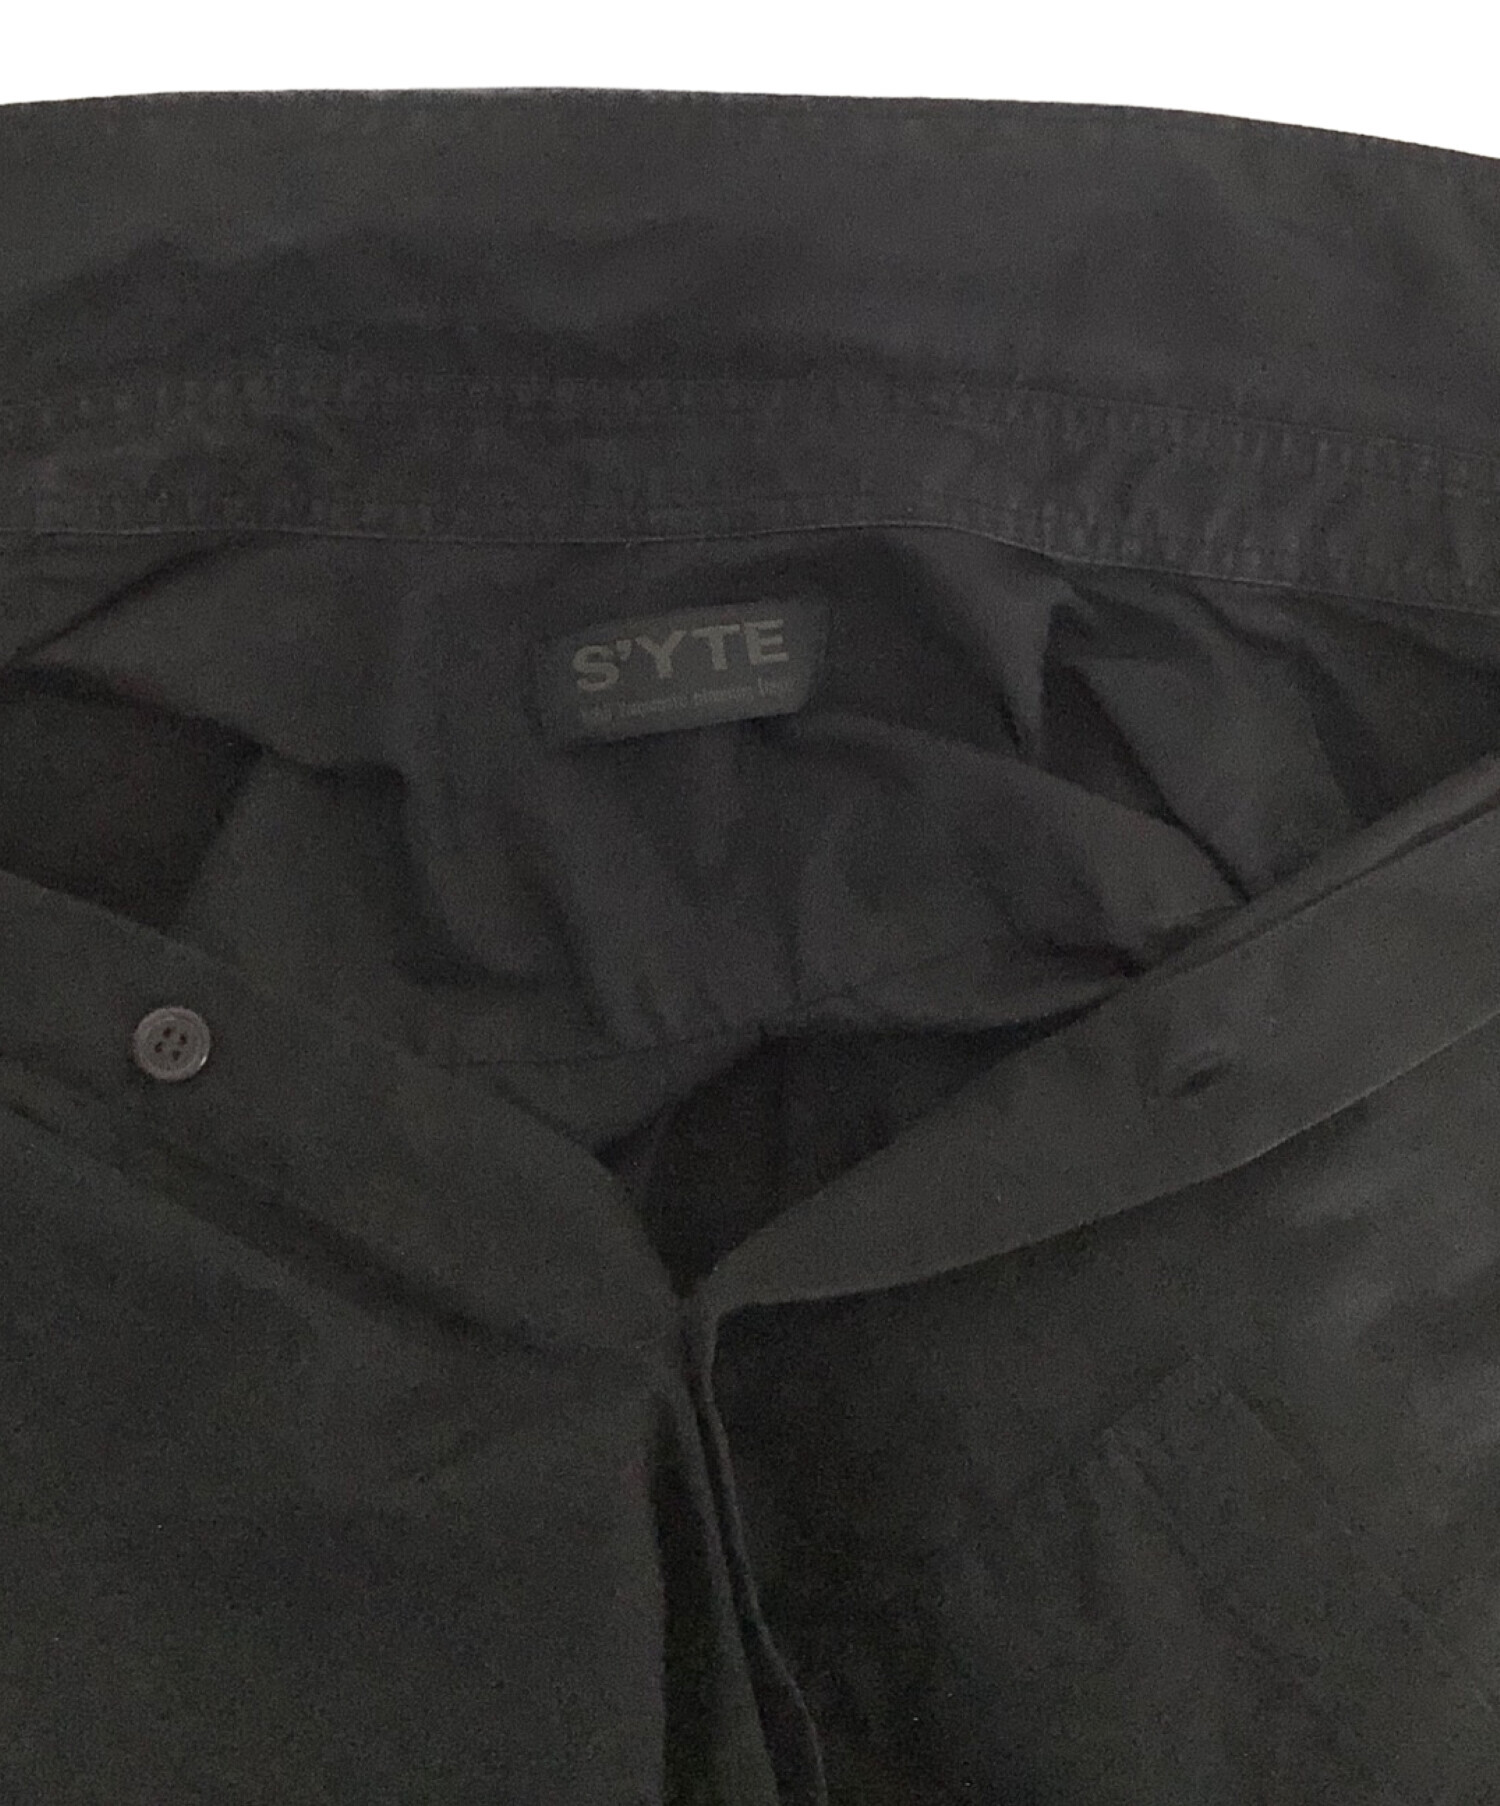 S’YTE YOHJI YAMAMOTO (サイト ヨウジヤマモト) レギュラーブロードシャツ ブラック サイズ:3